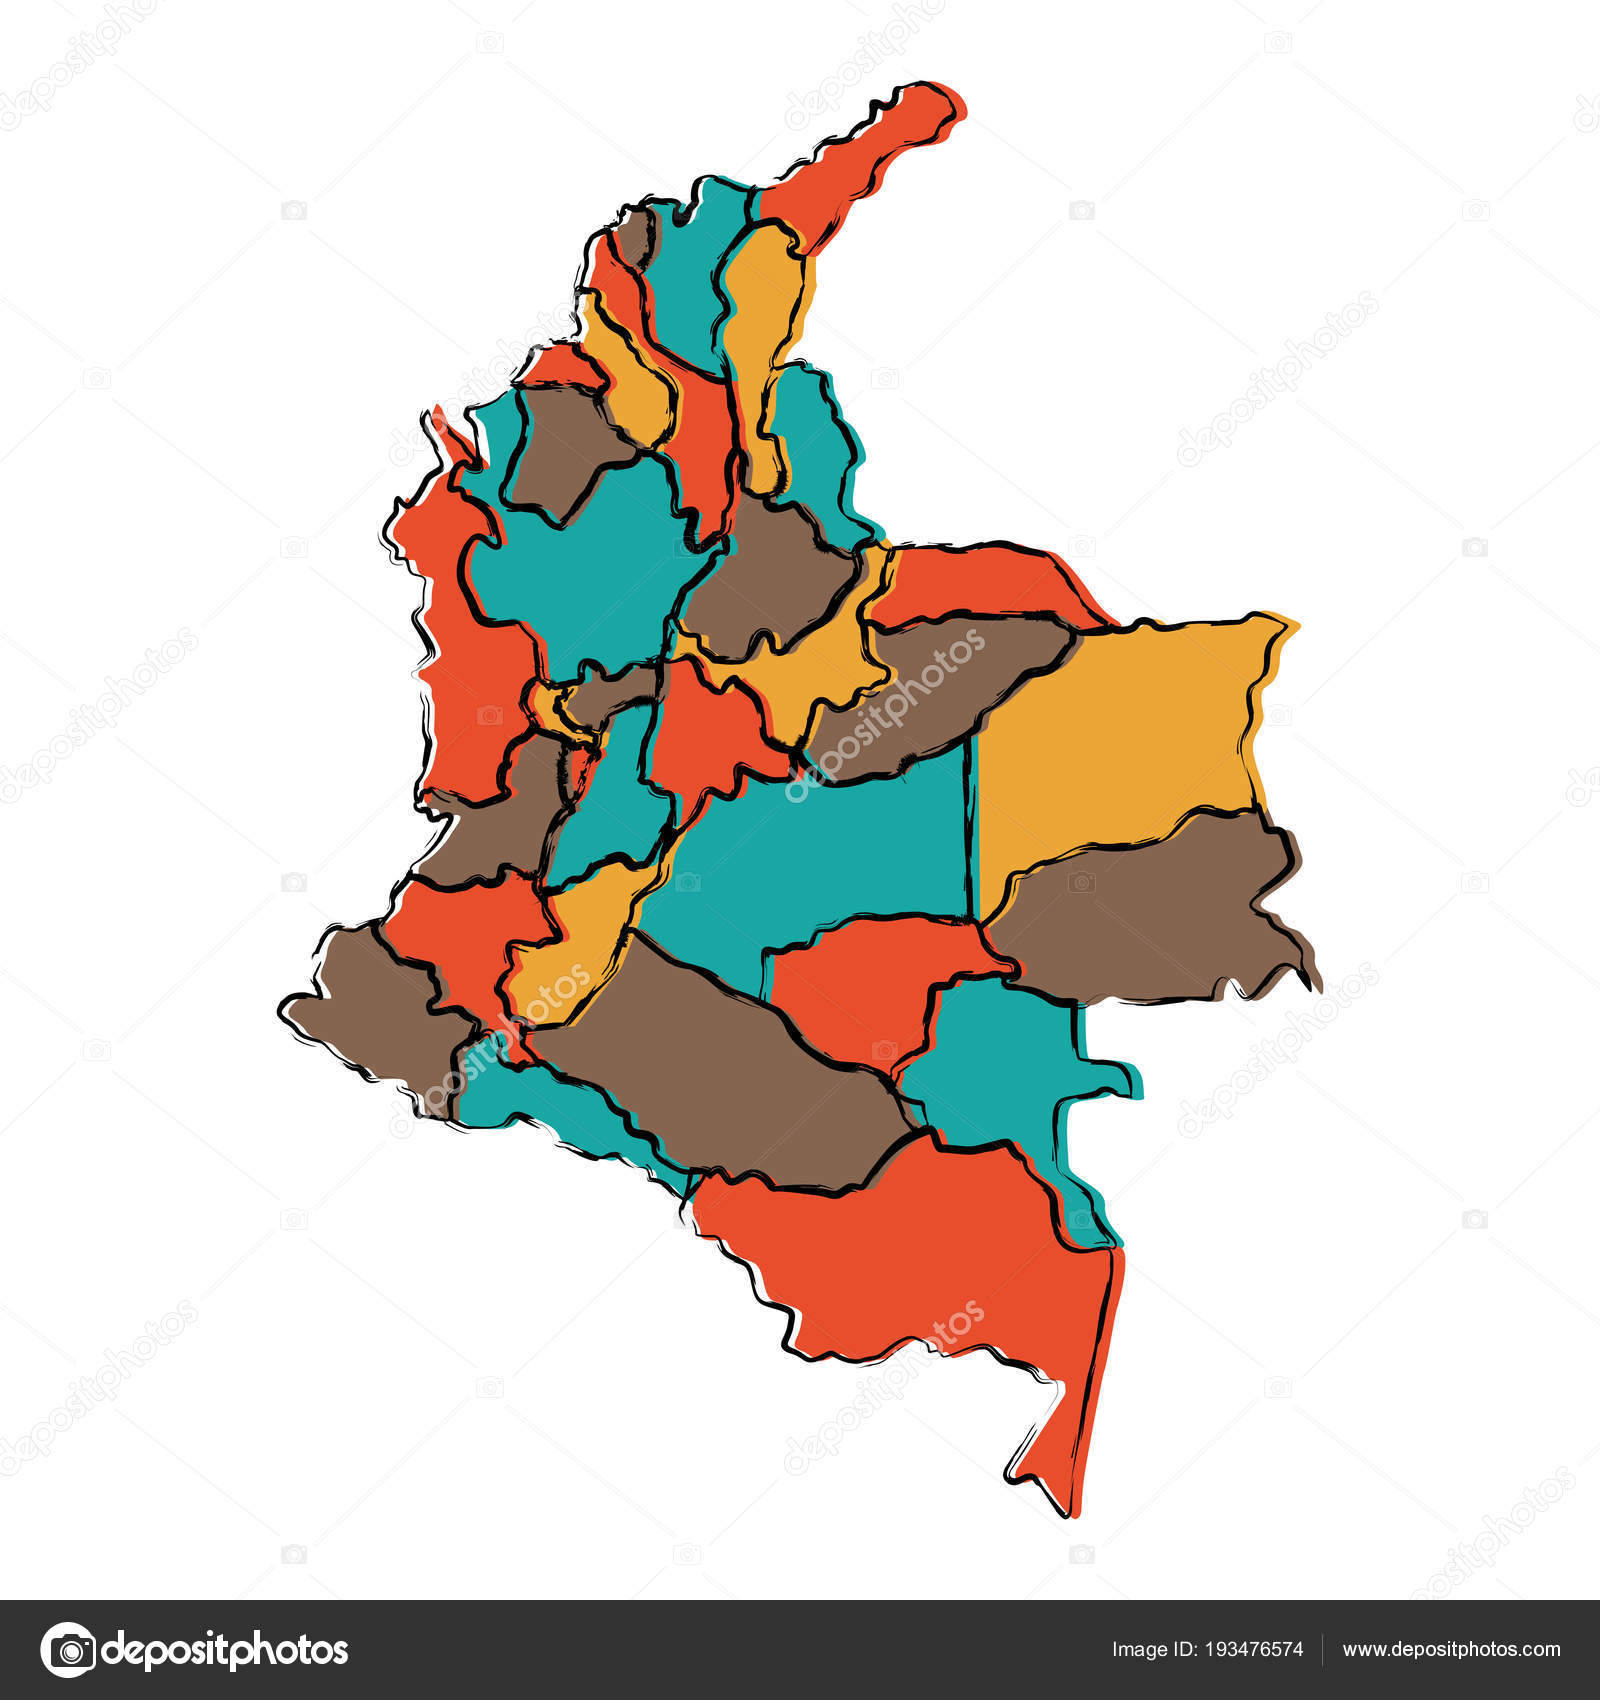 Juegos De Geografía Juego De Departamentos De Colombia En El Mapa 2 Cerebriti 